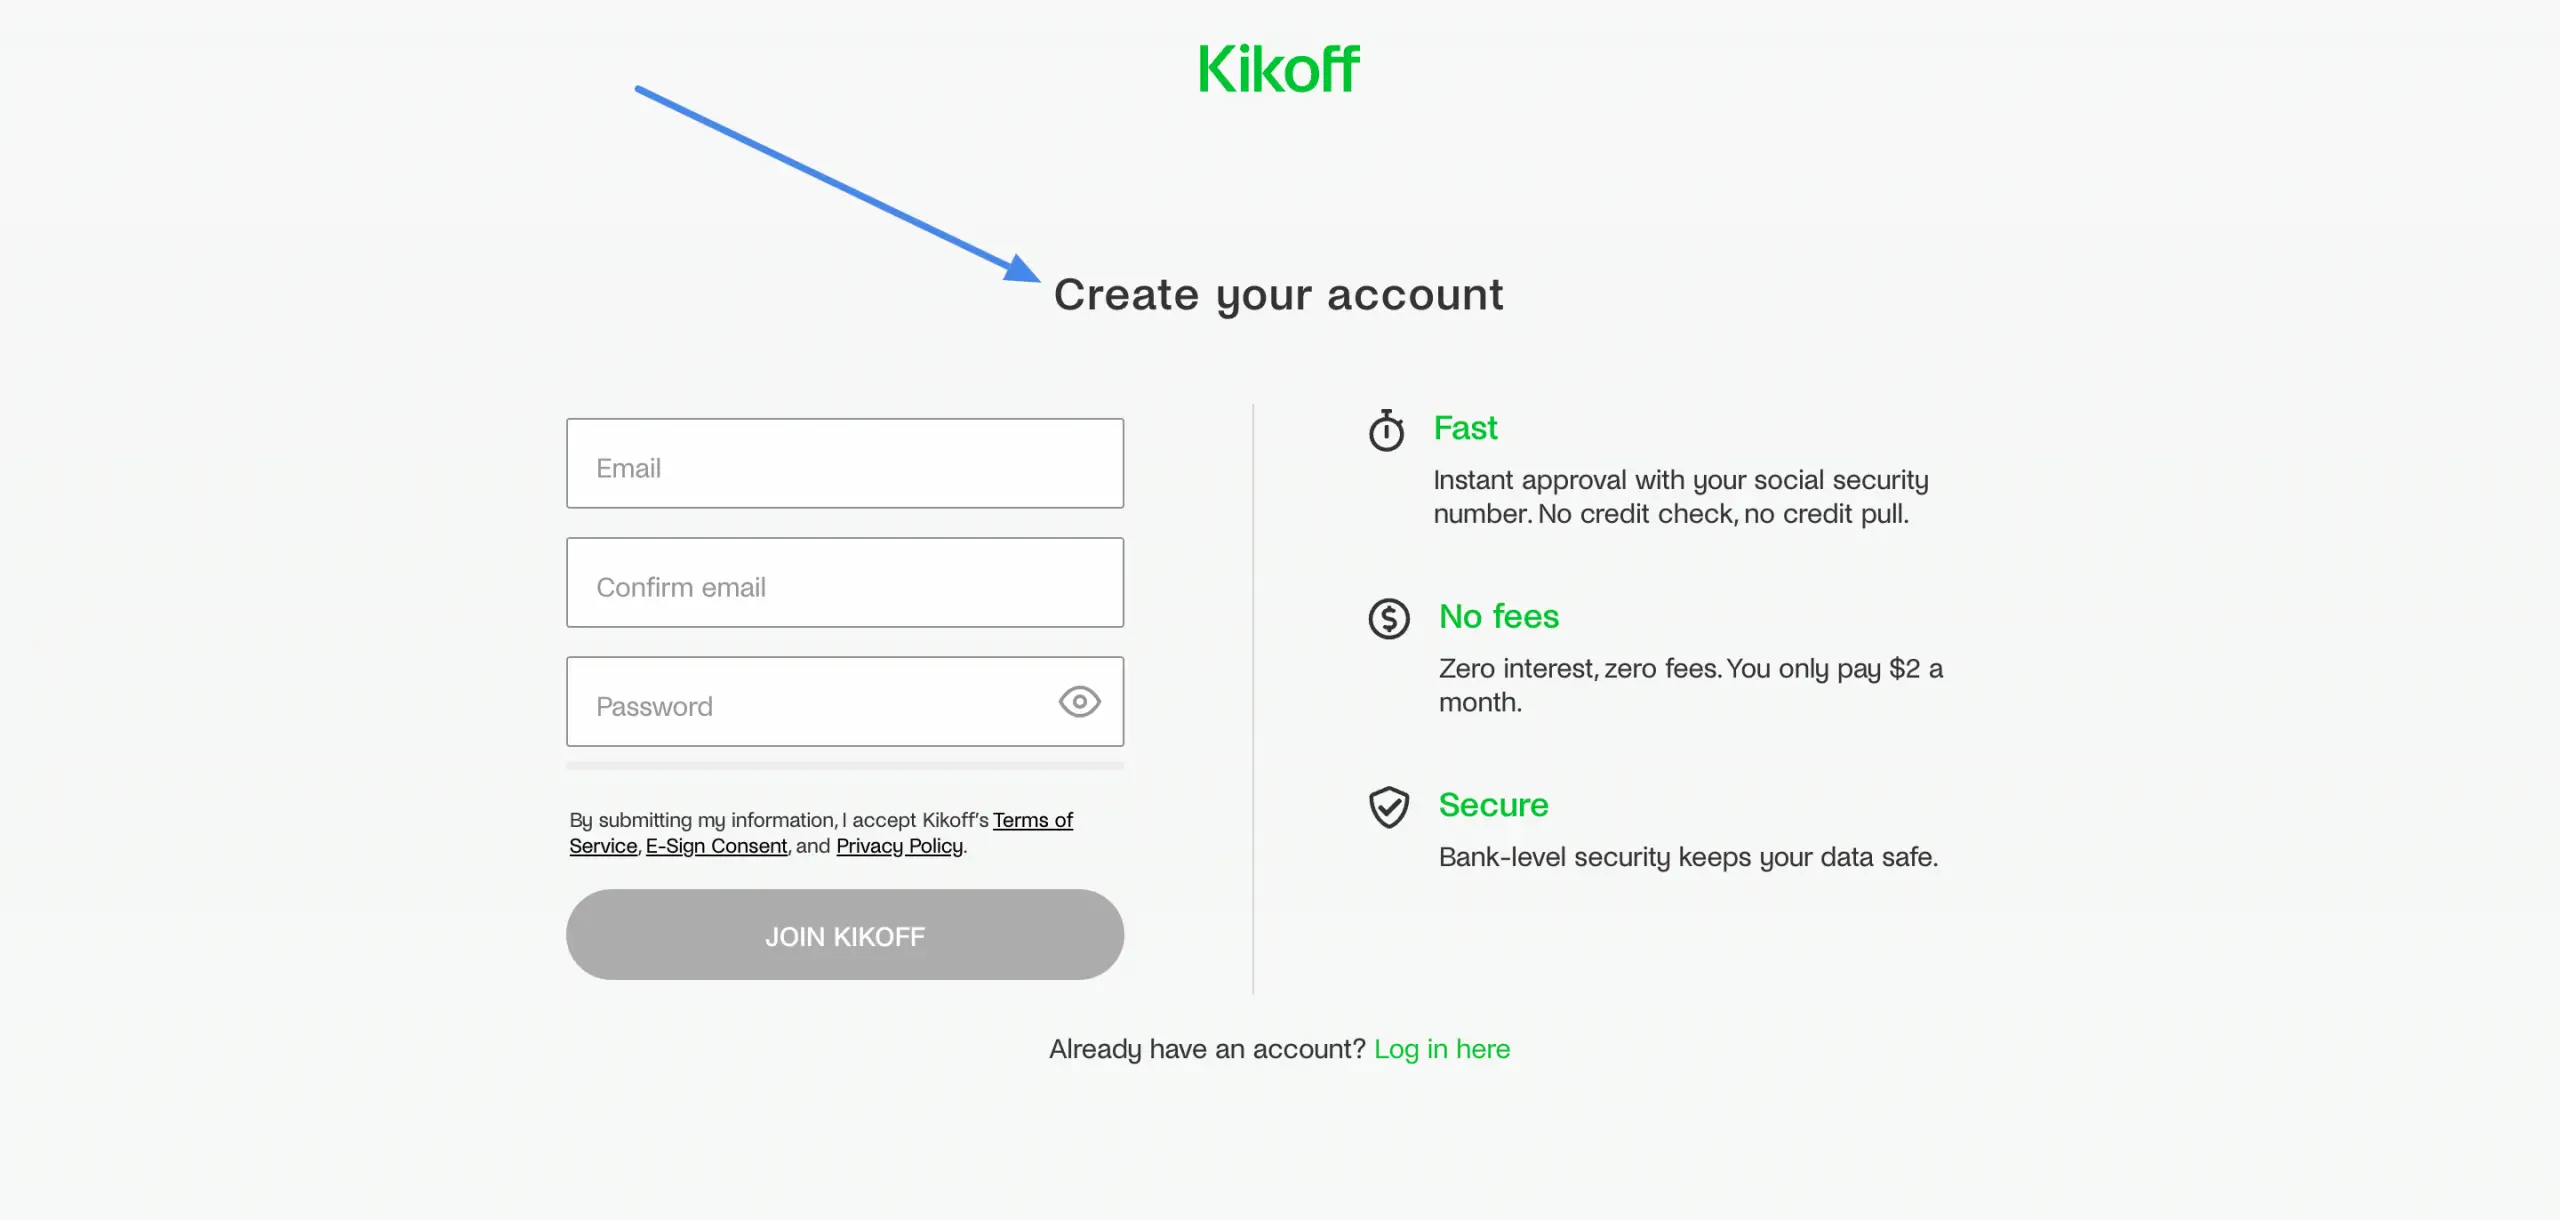 How To Cancel Kikoff Account? 4 Ways To Close Kikoff Account